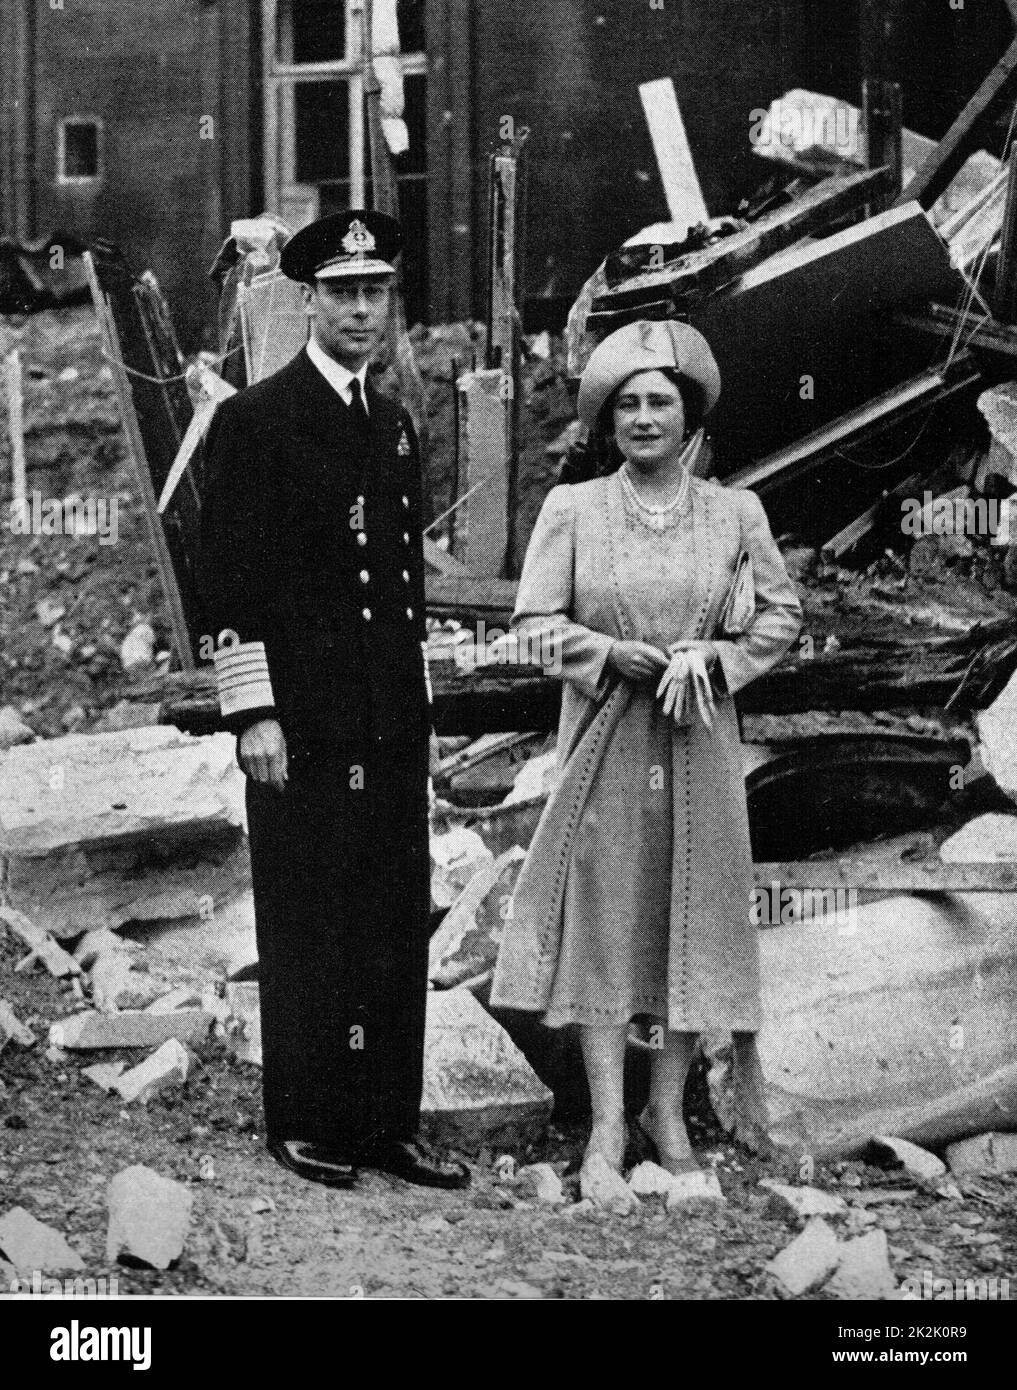 Le roi George V et de la Reine Elizabeth, se tenir dans les ruines du palais de Buckingham après un raid aérien dans la seconde guerre mondiale Banque D'Images